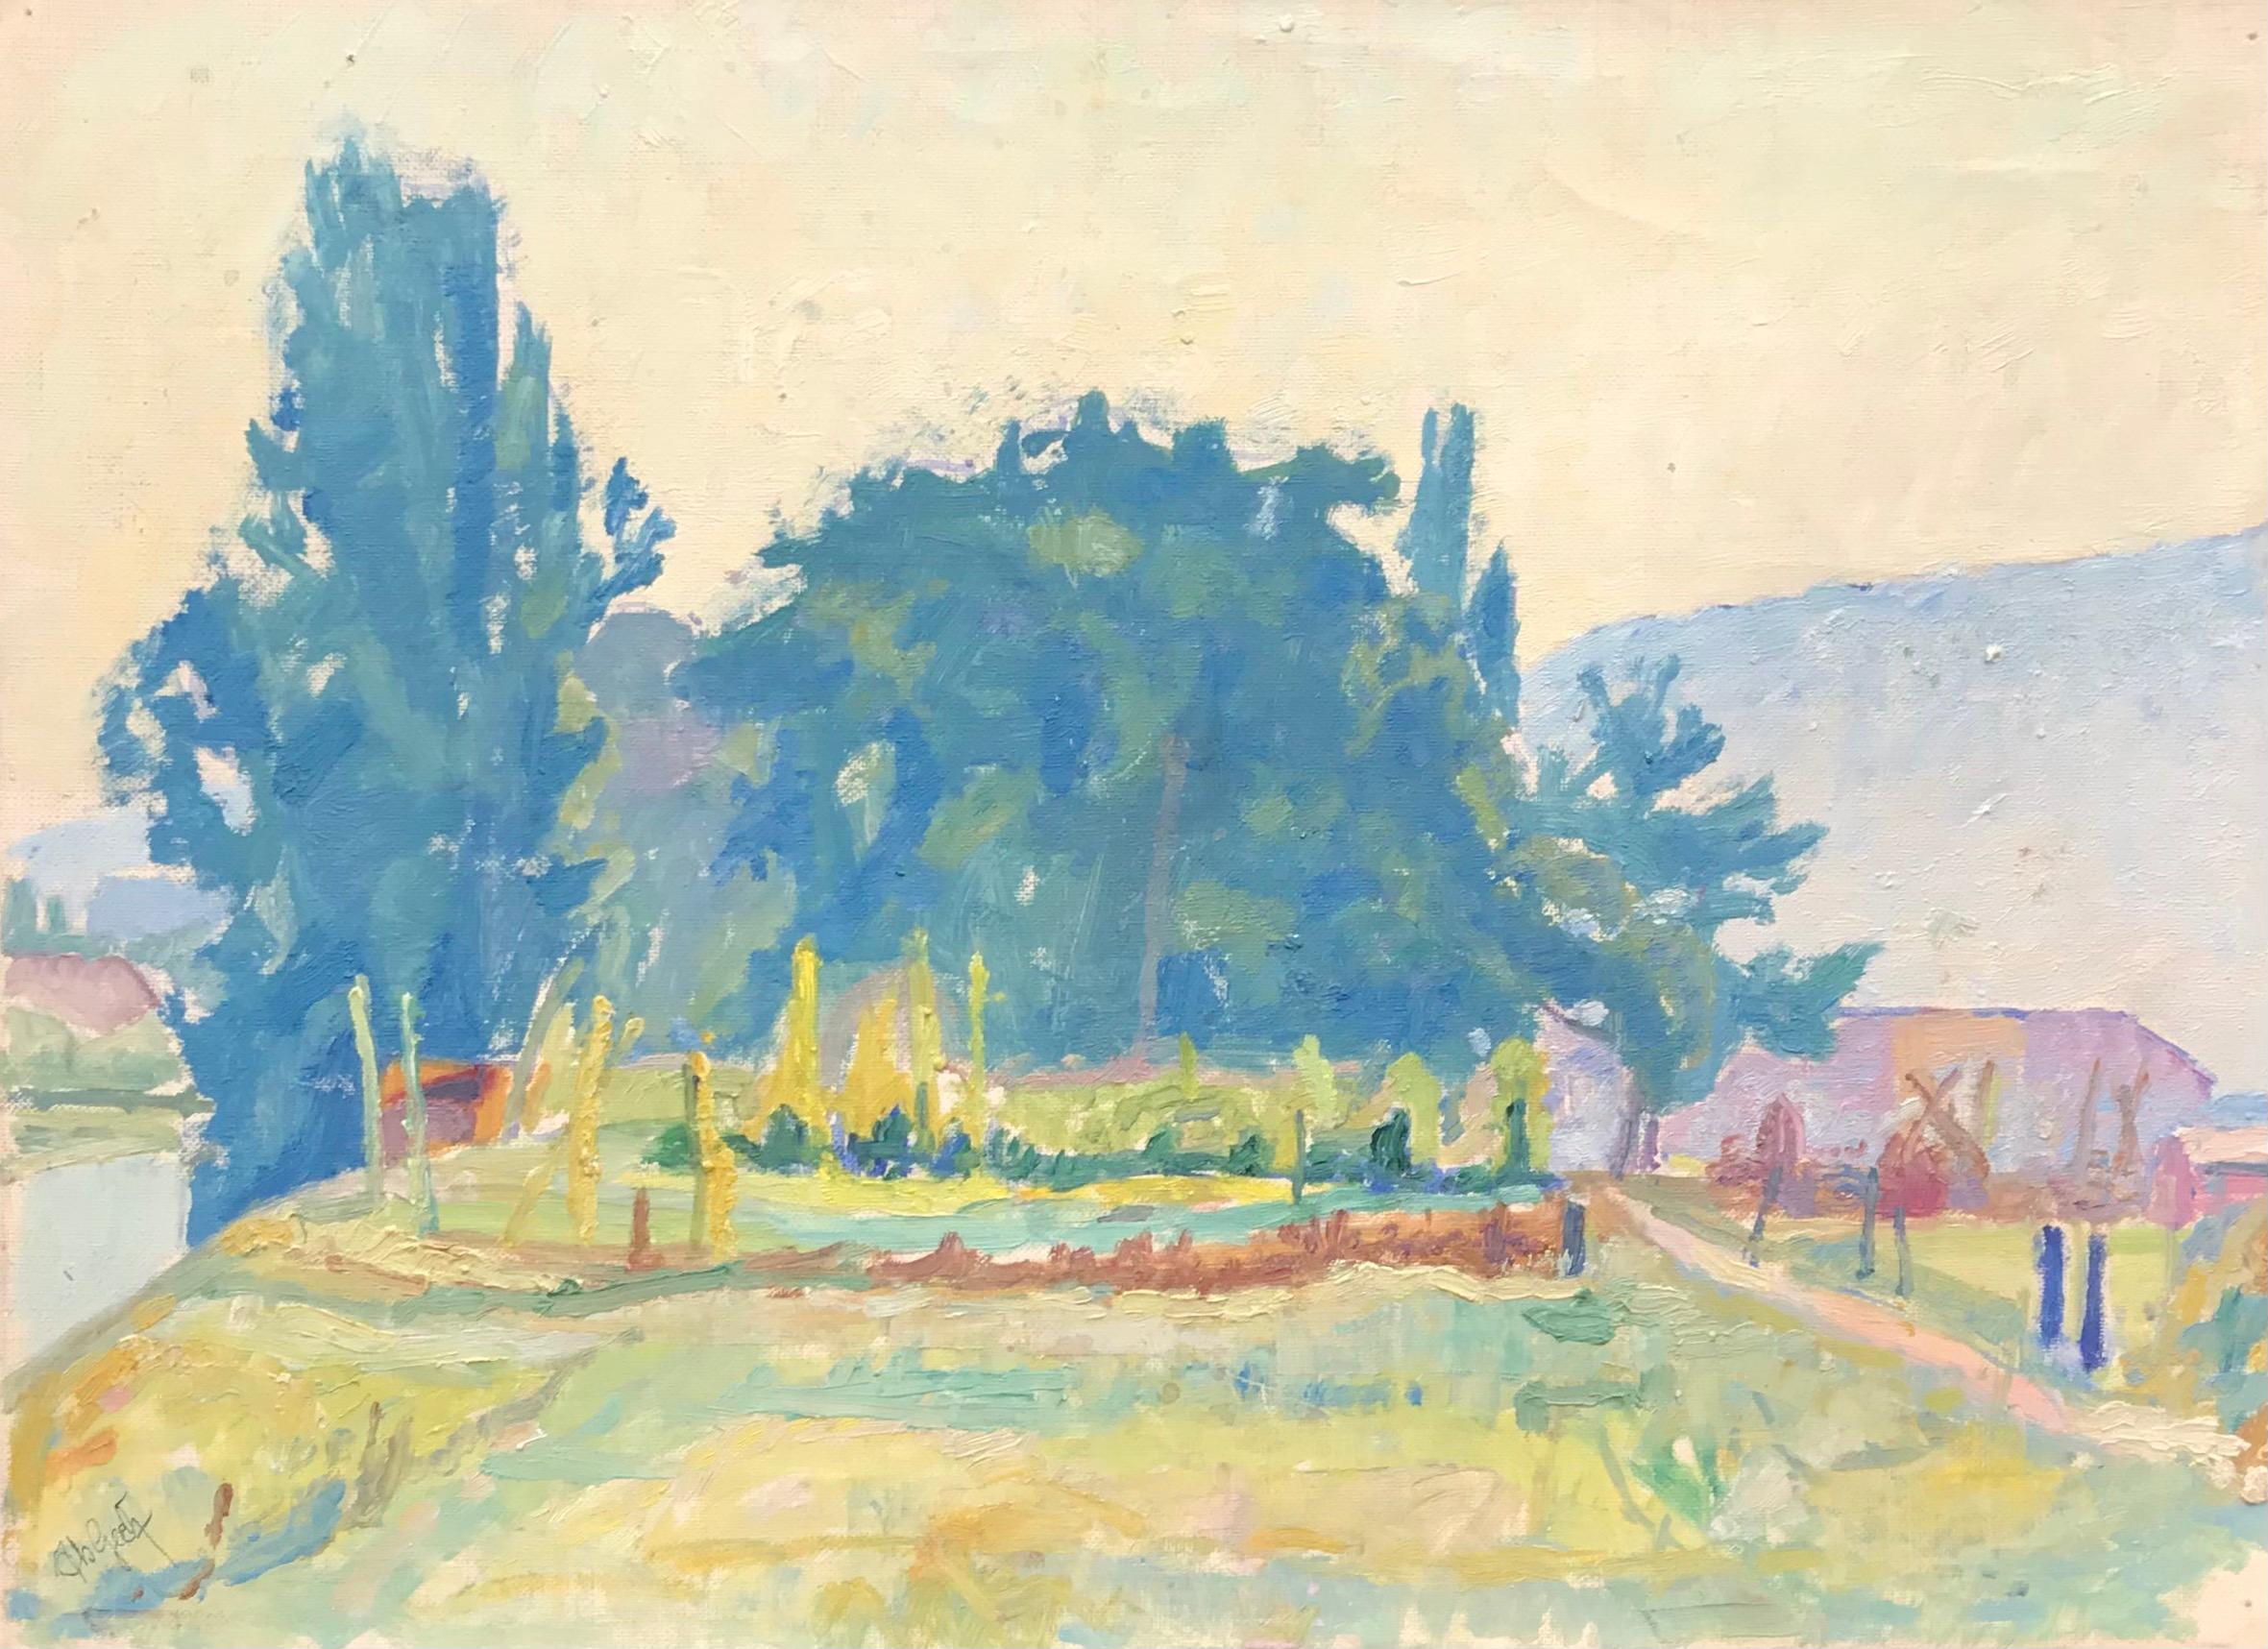 Landscape Painting Isaac Charles Goetz - Paysage de printemps par I. Ch. Goetz - Huile sur toile 30x41 cm